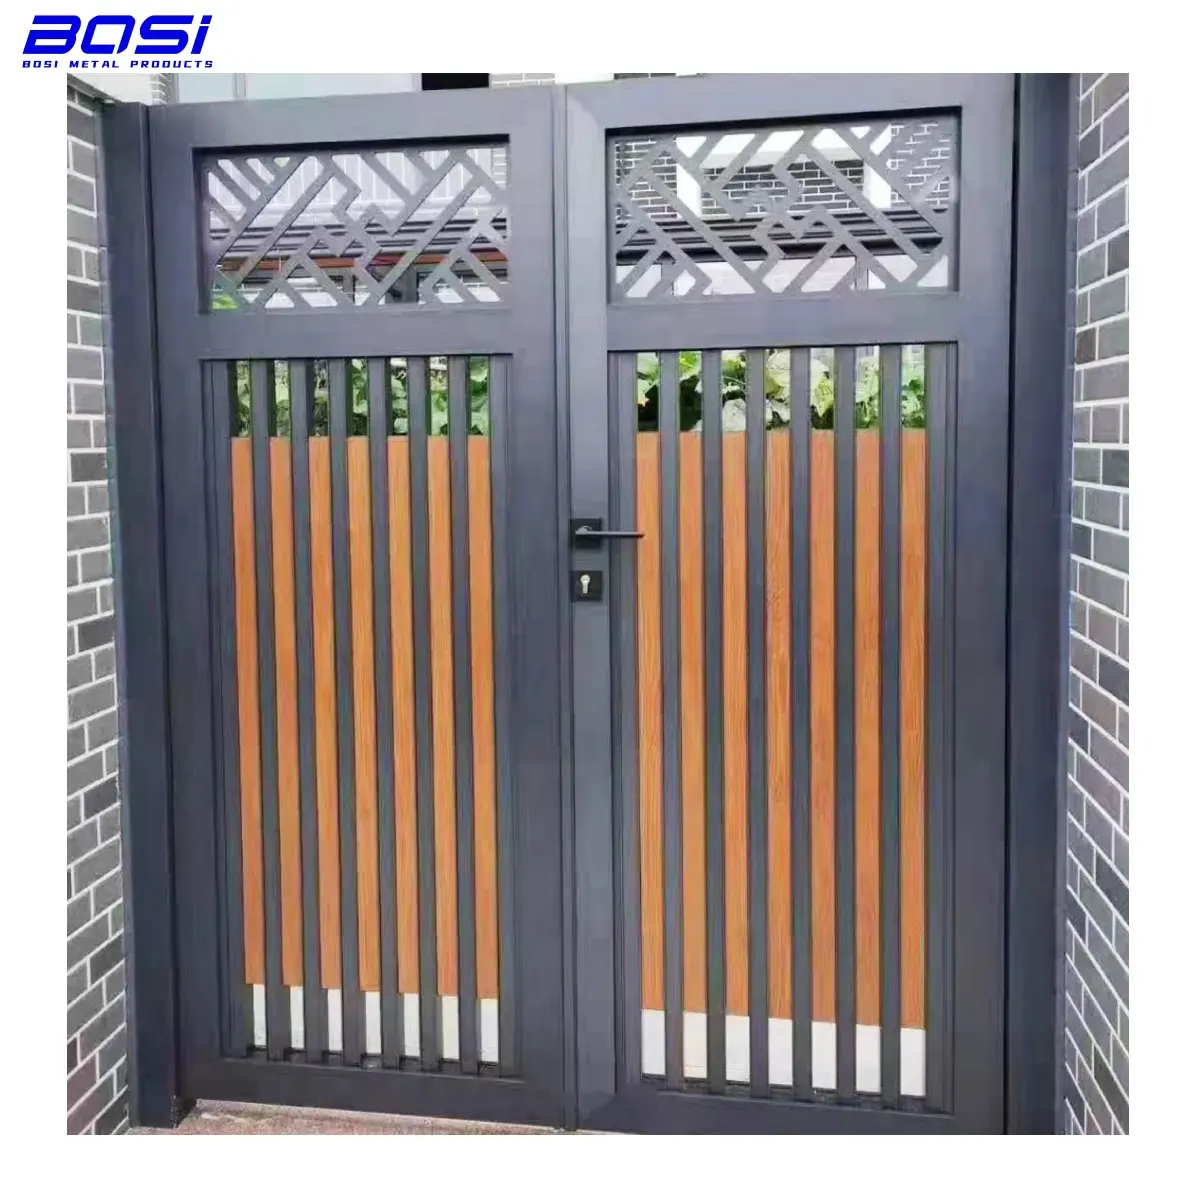 Çin tarzı Villa giriş kapısı alüminyum salıncak kapısı Metal kapı bahçe kapı açık giriş kapısı için